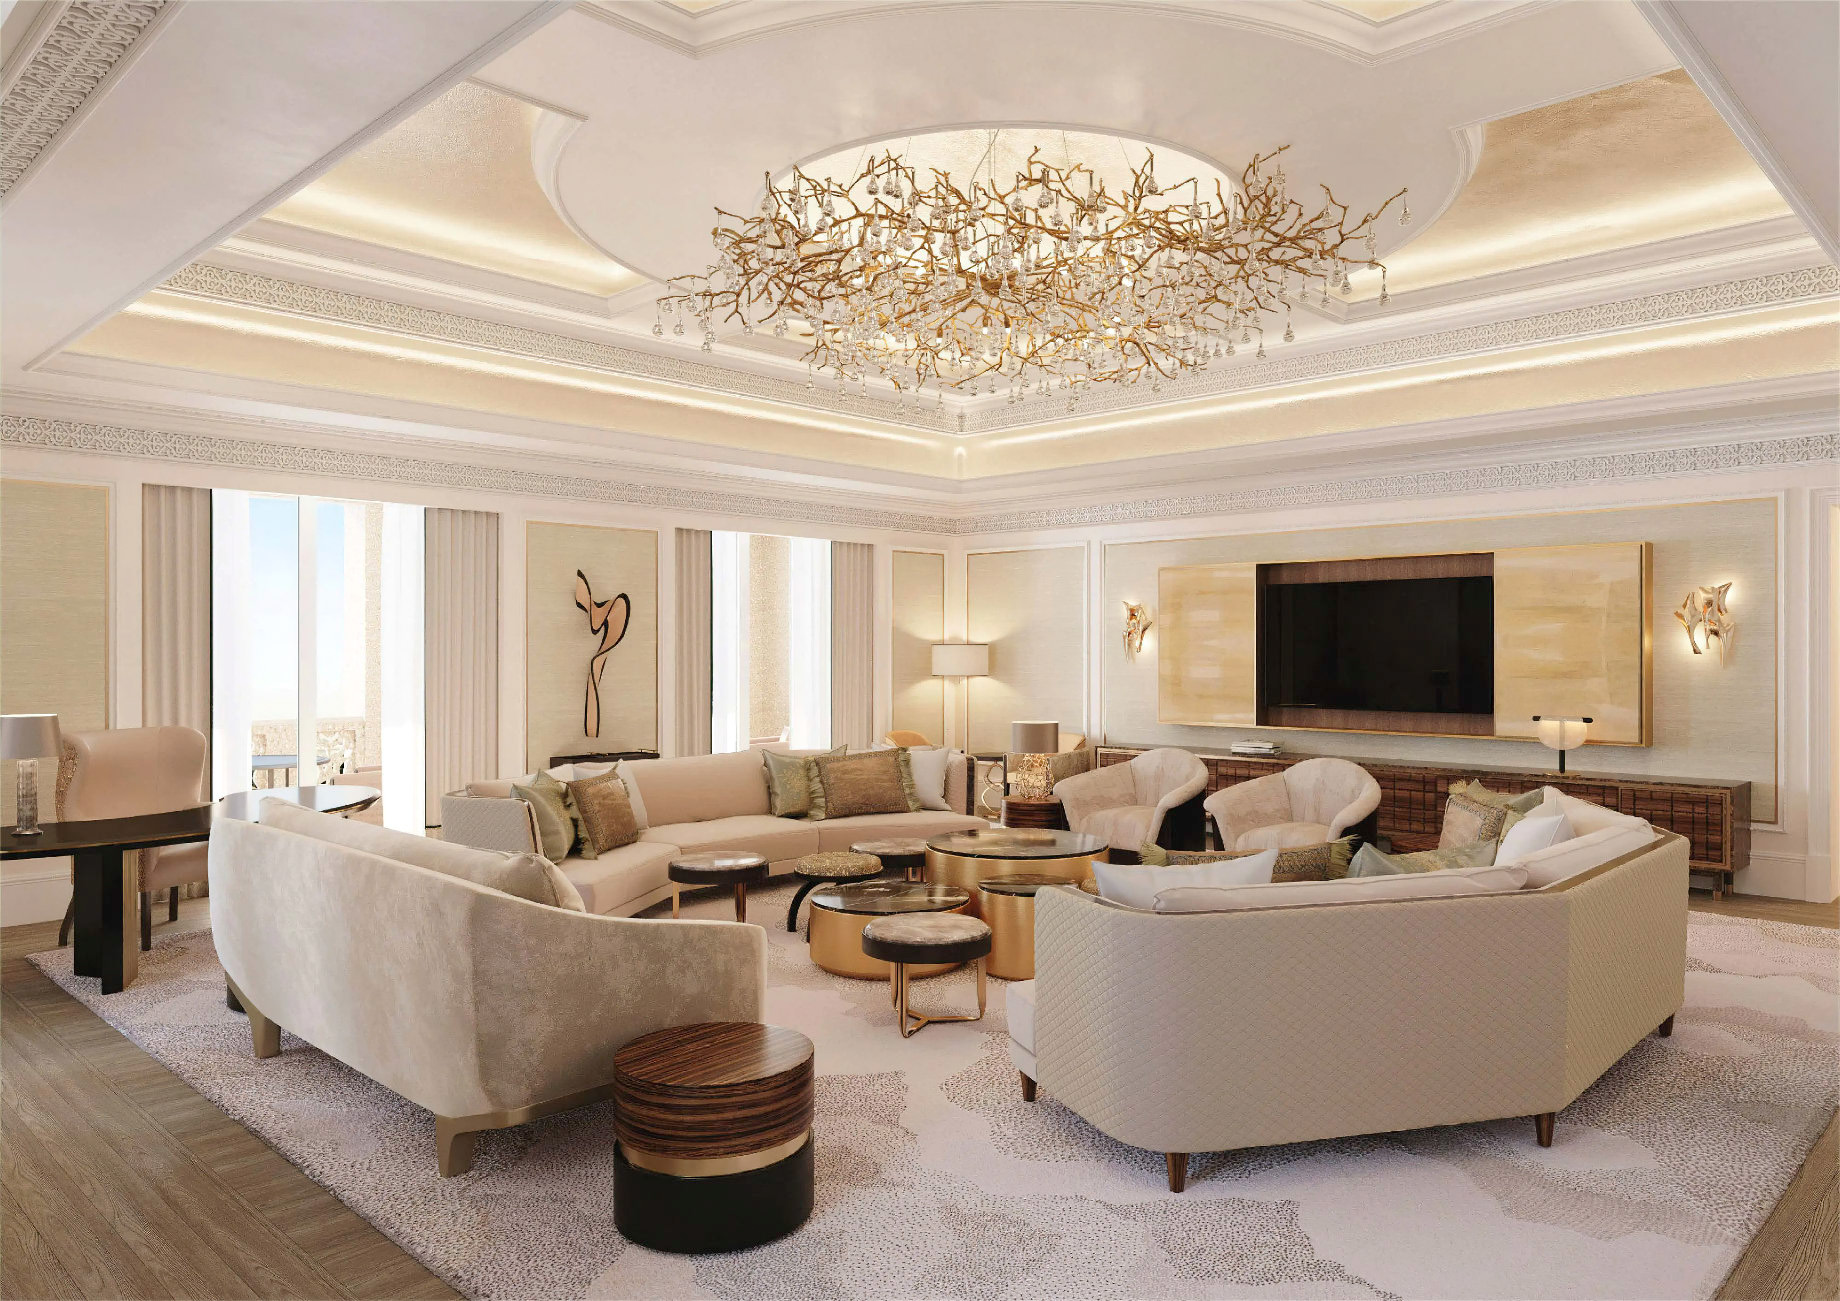 Emirates Palace Abu Dhabi Hotel – Abu Dhabi, UAE – Royal Suite